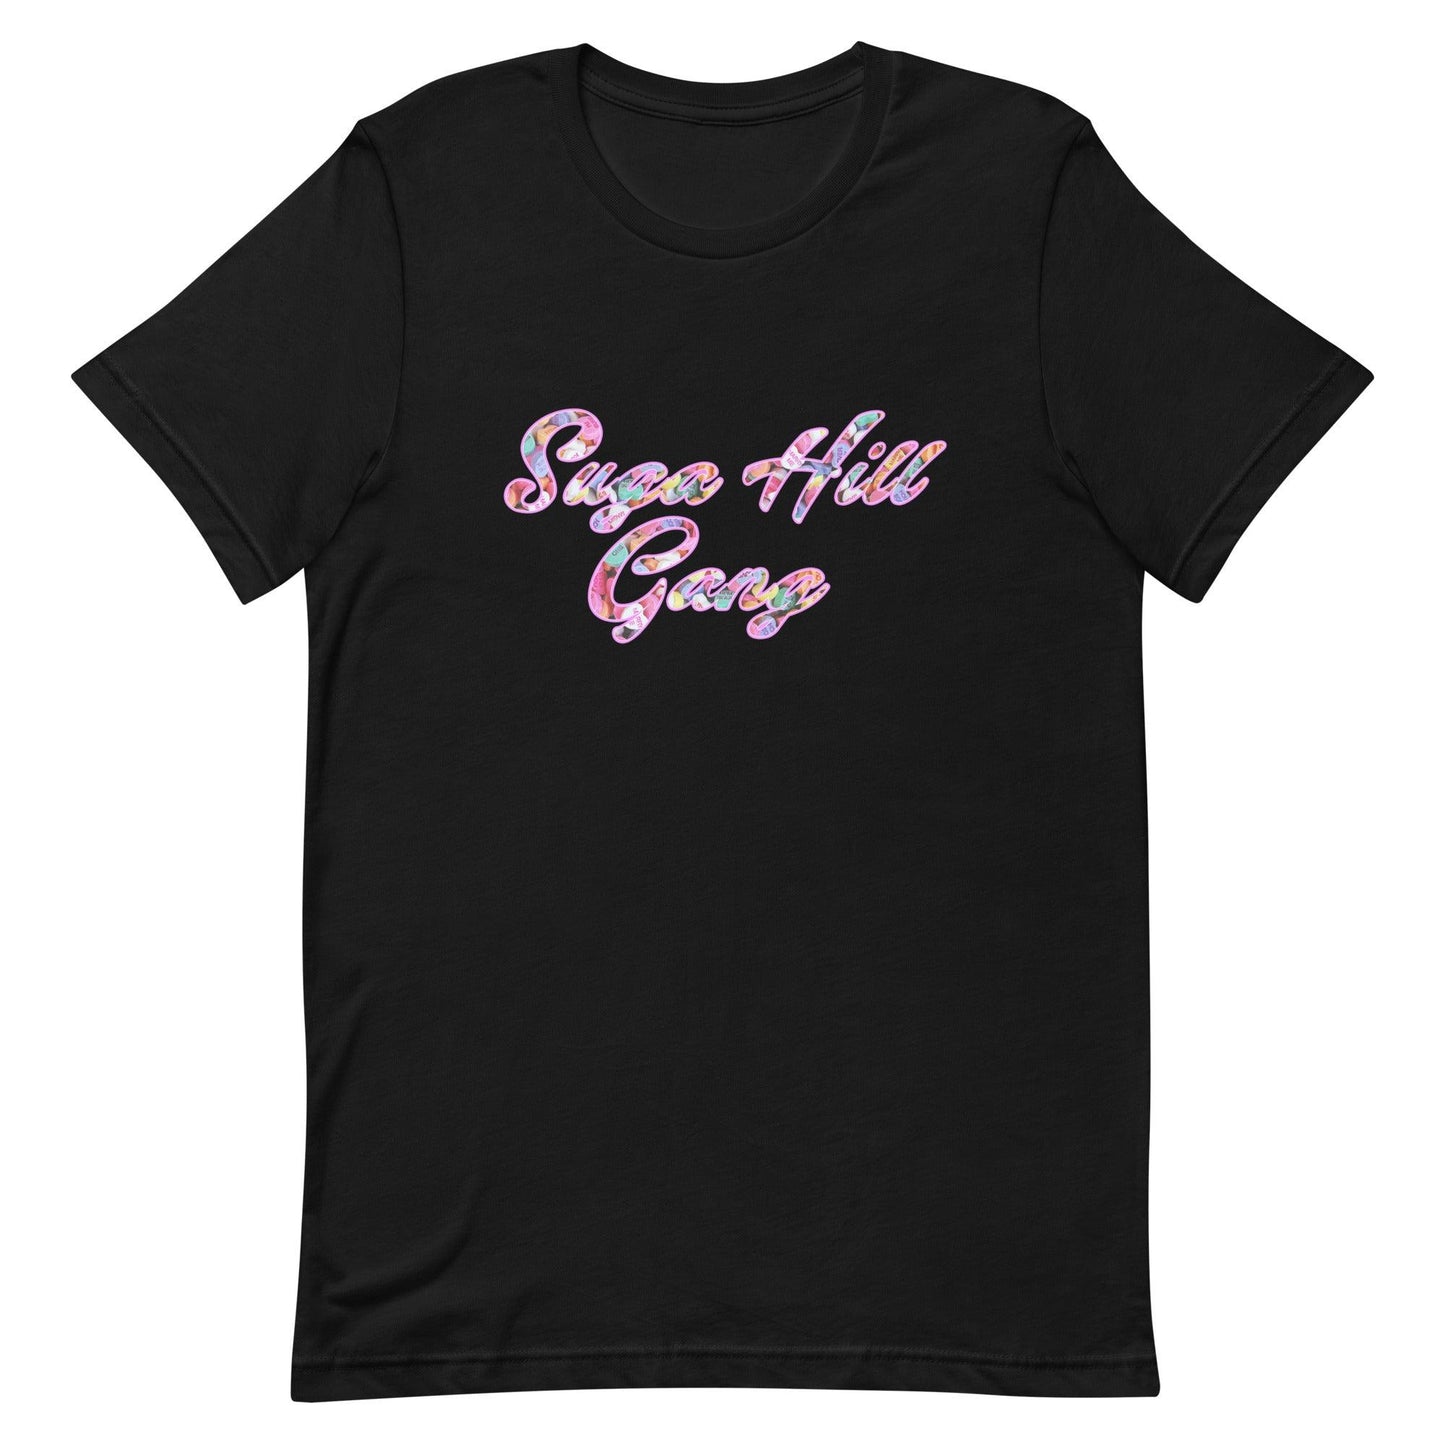 Jyaire Hill "Signature" t-shirt - Fan Arch